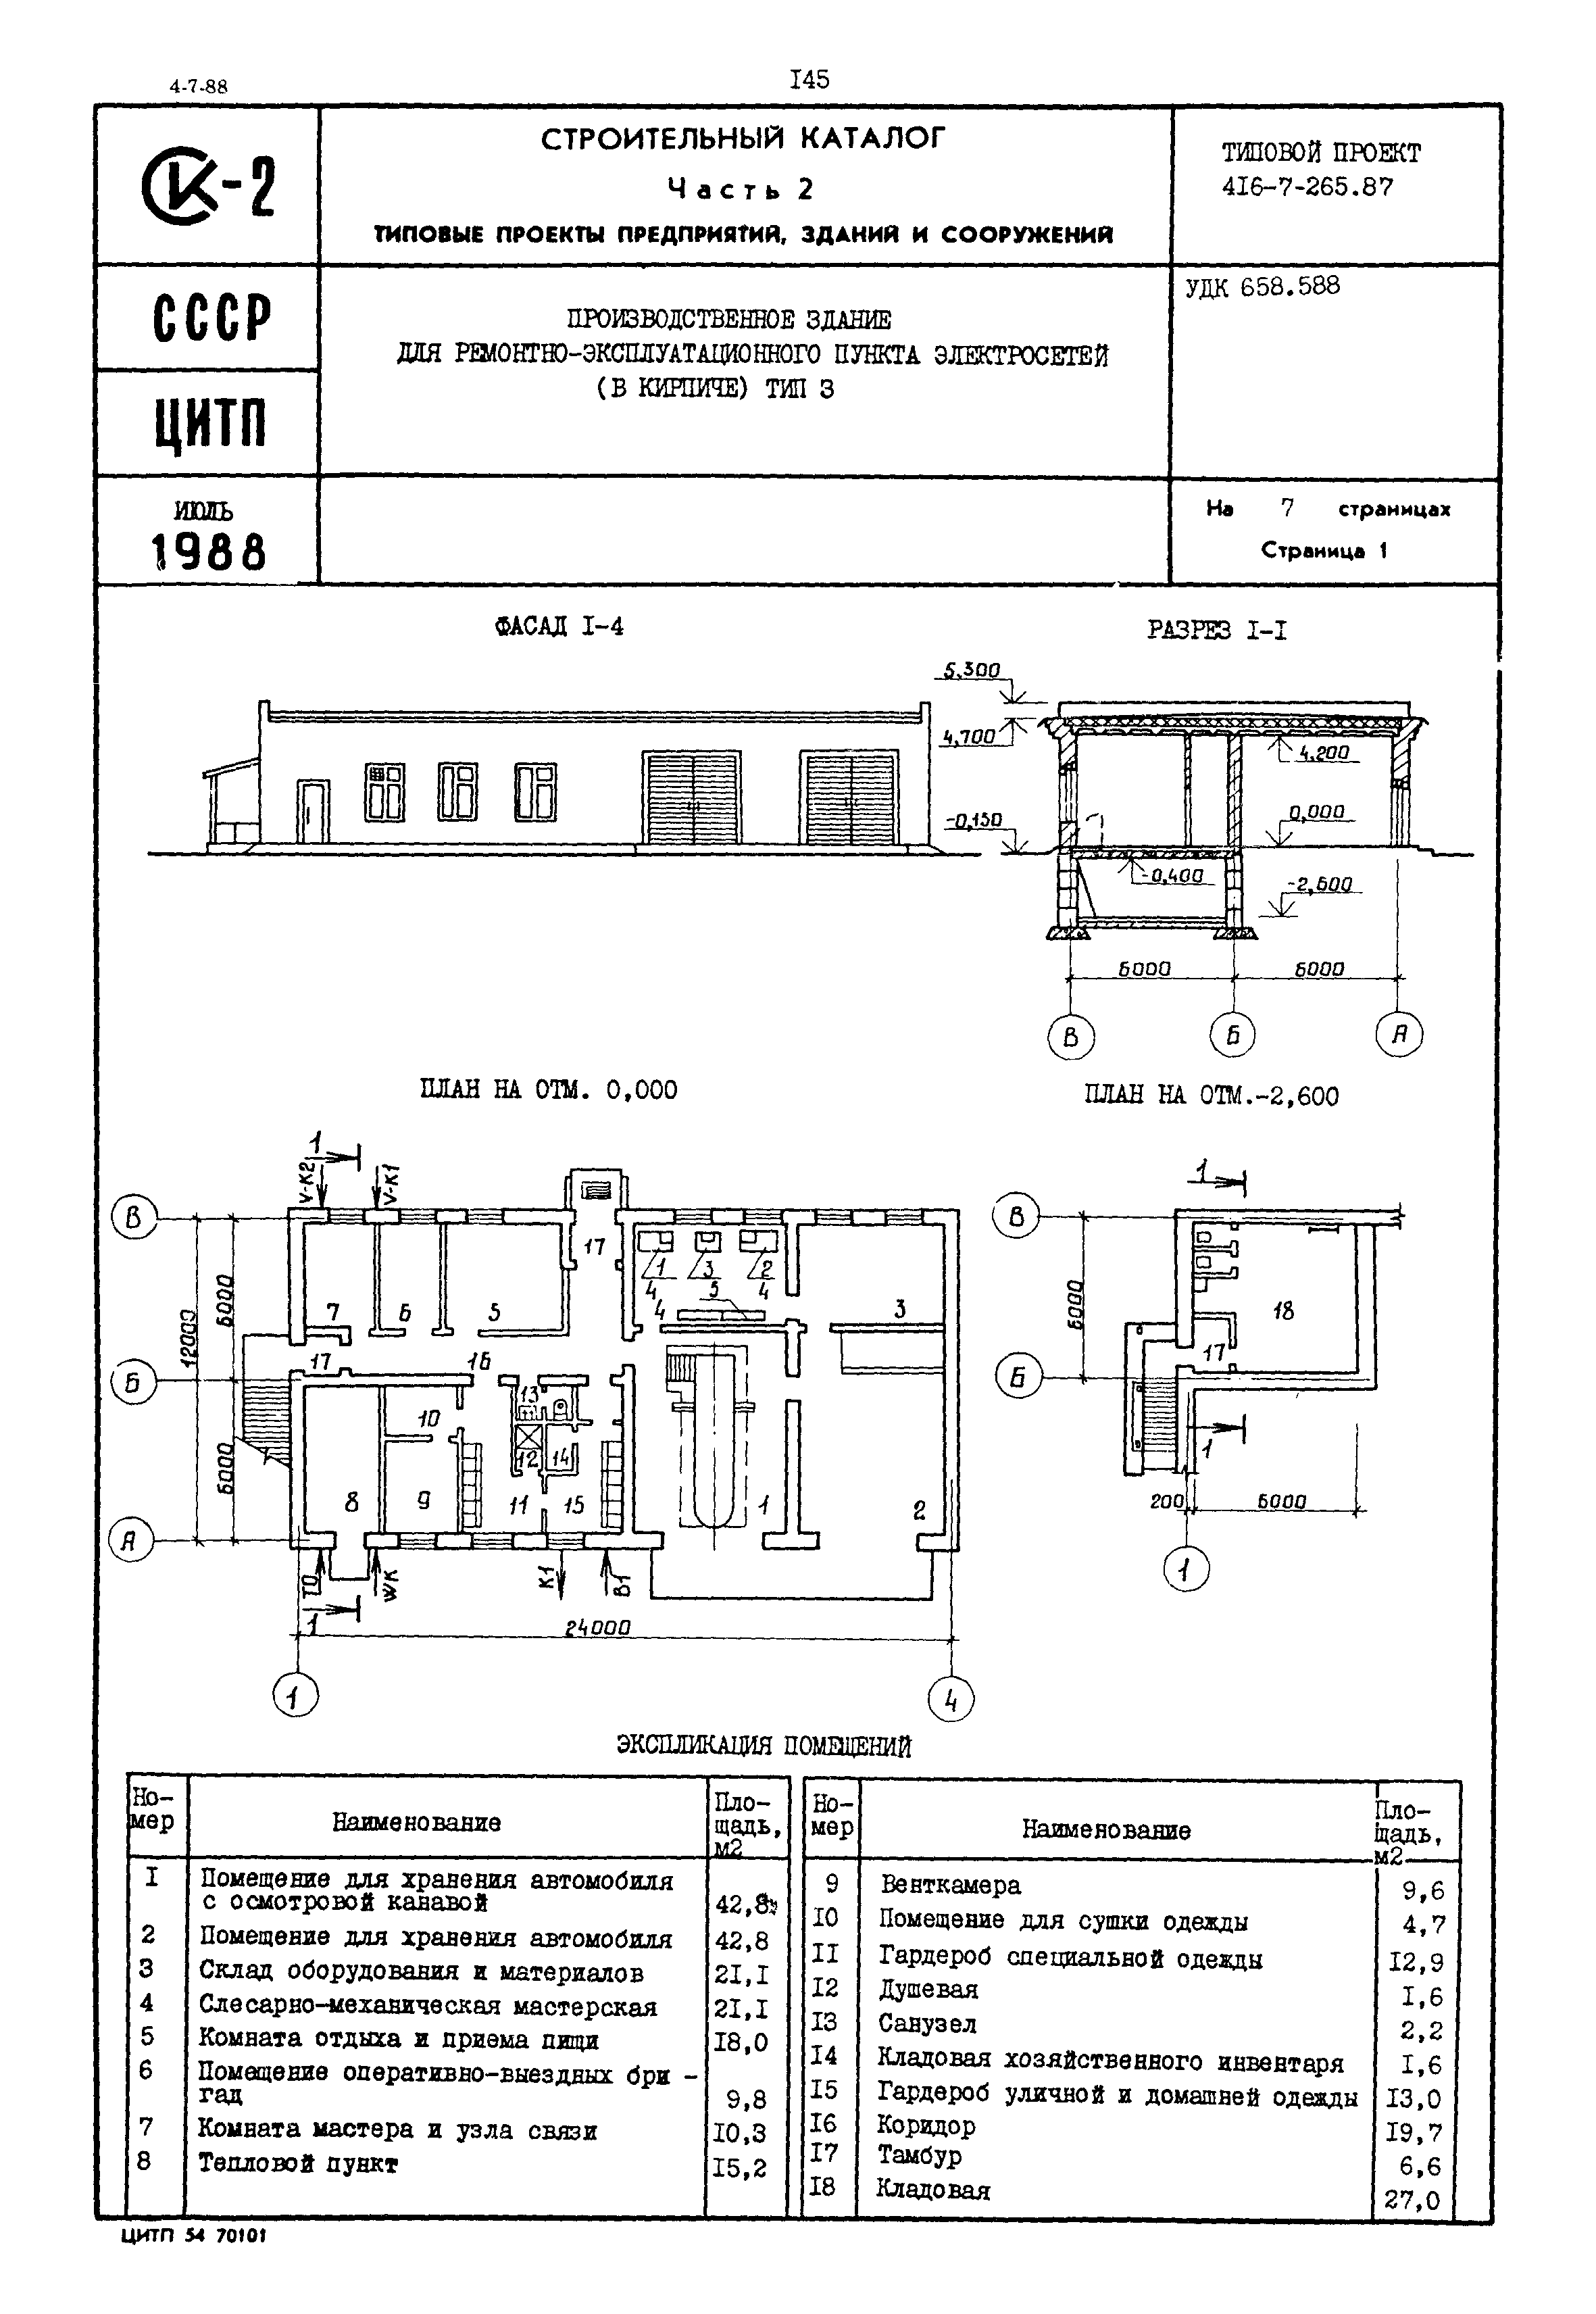 Типовой проект 416-7-265.87